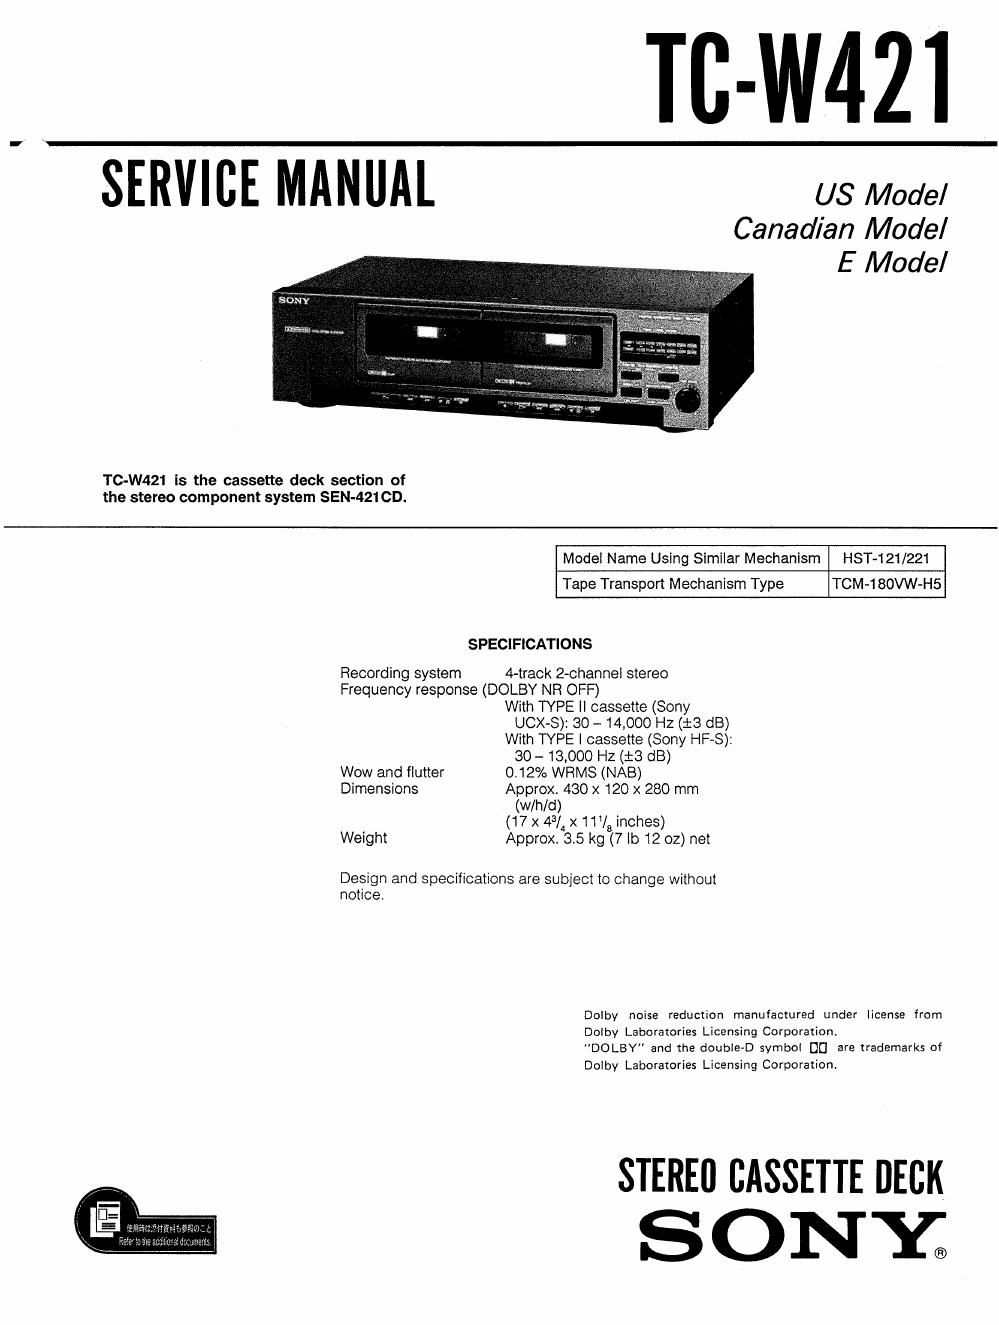 sony tc w 421 service manual